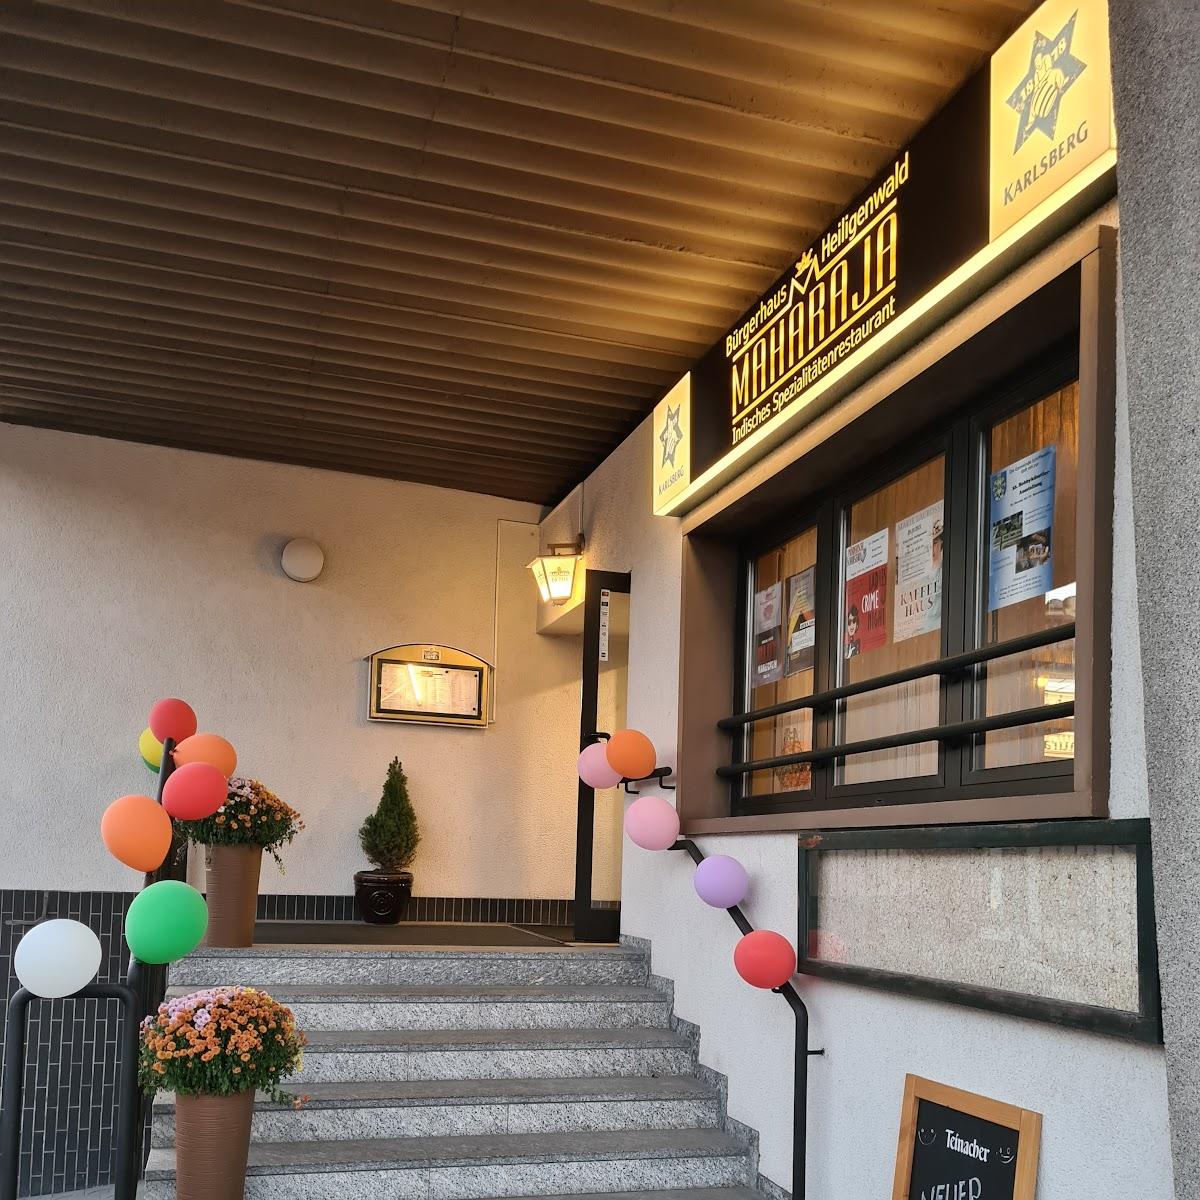 Restaurant "Bürgerhause Indische Spezialitäten" in Schiffweiler